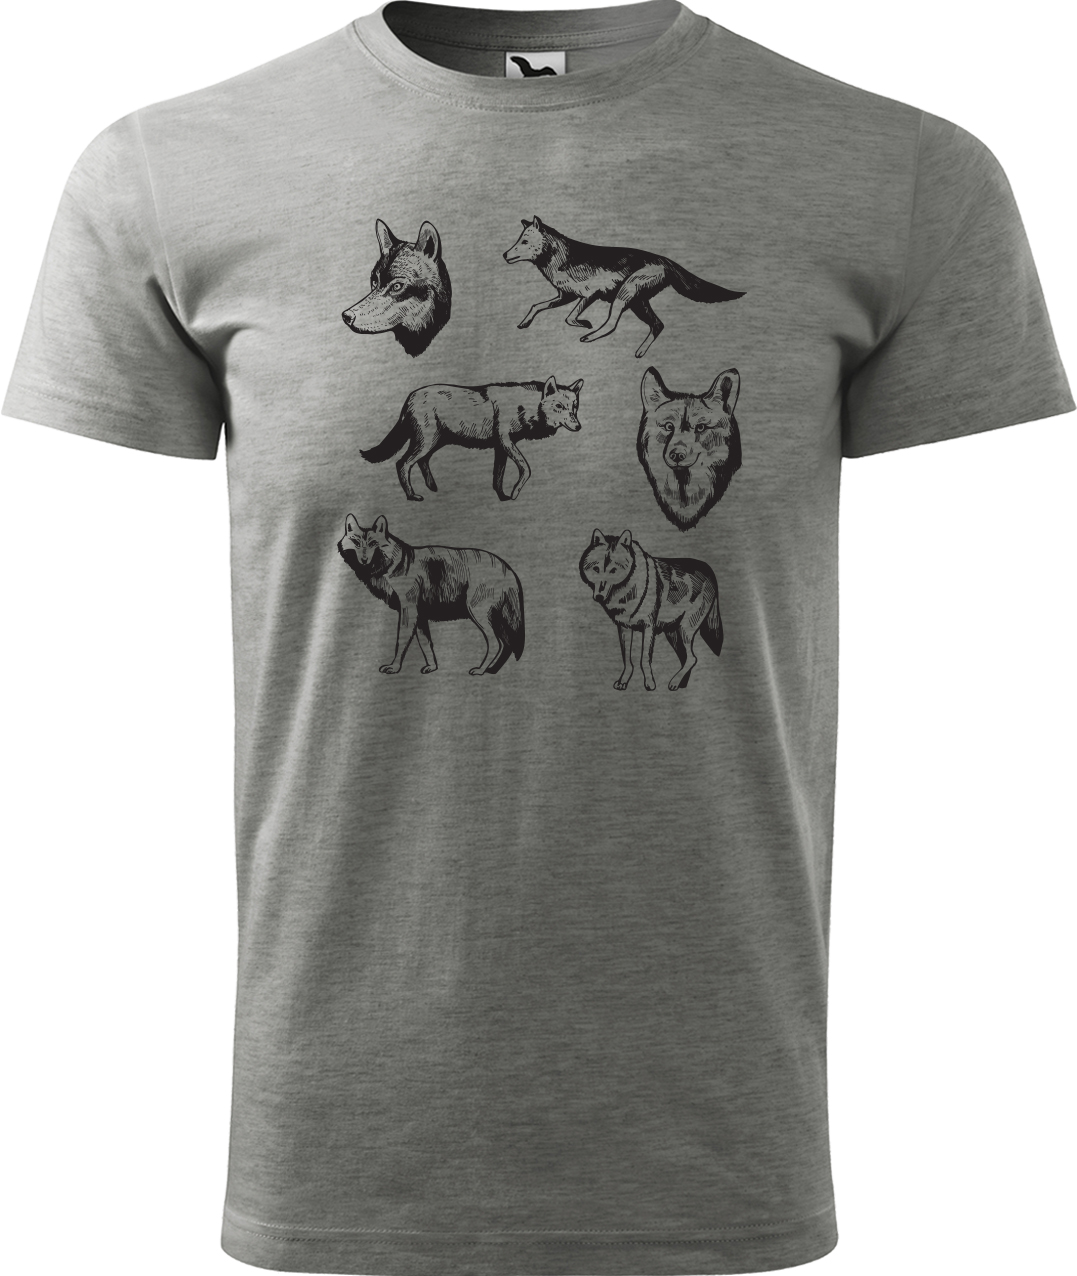 Pánské tričko s vlkem - Vlci Velikost: M, Barva: Tmavě šedý melír (12), Střih: pánský